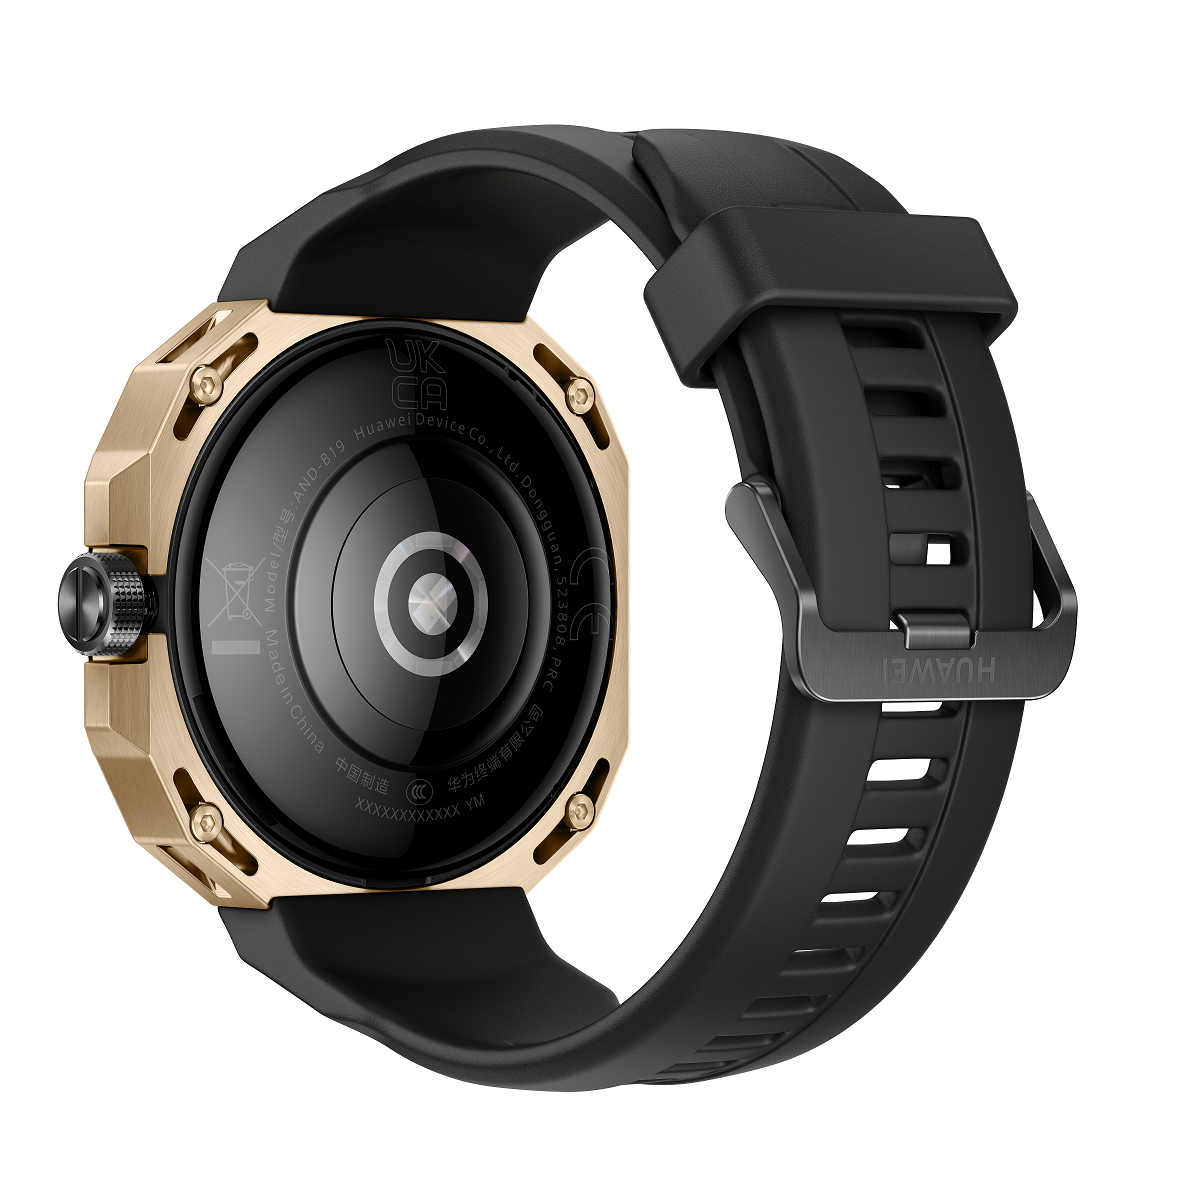 HUAWEI WATCH GT Cyber, thêm một đồng hồ thông minh chất từ Huawei - Arnold ProductImage Gold Rear Right PNG RGB 20220830